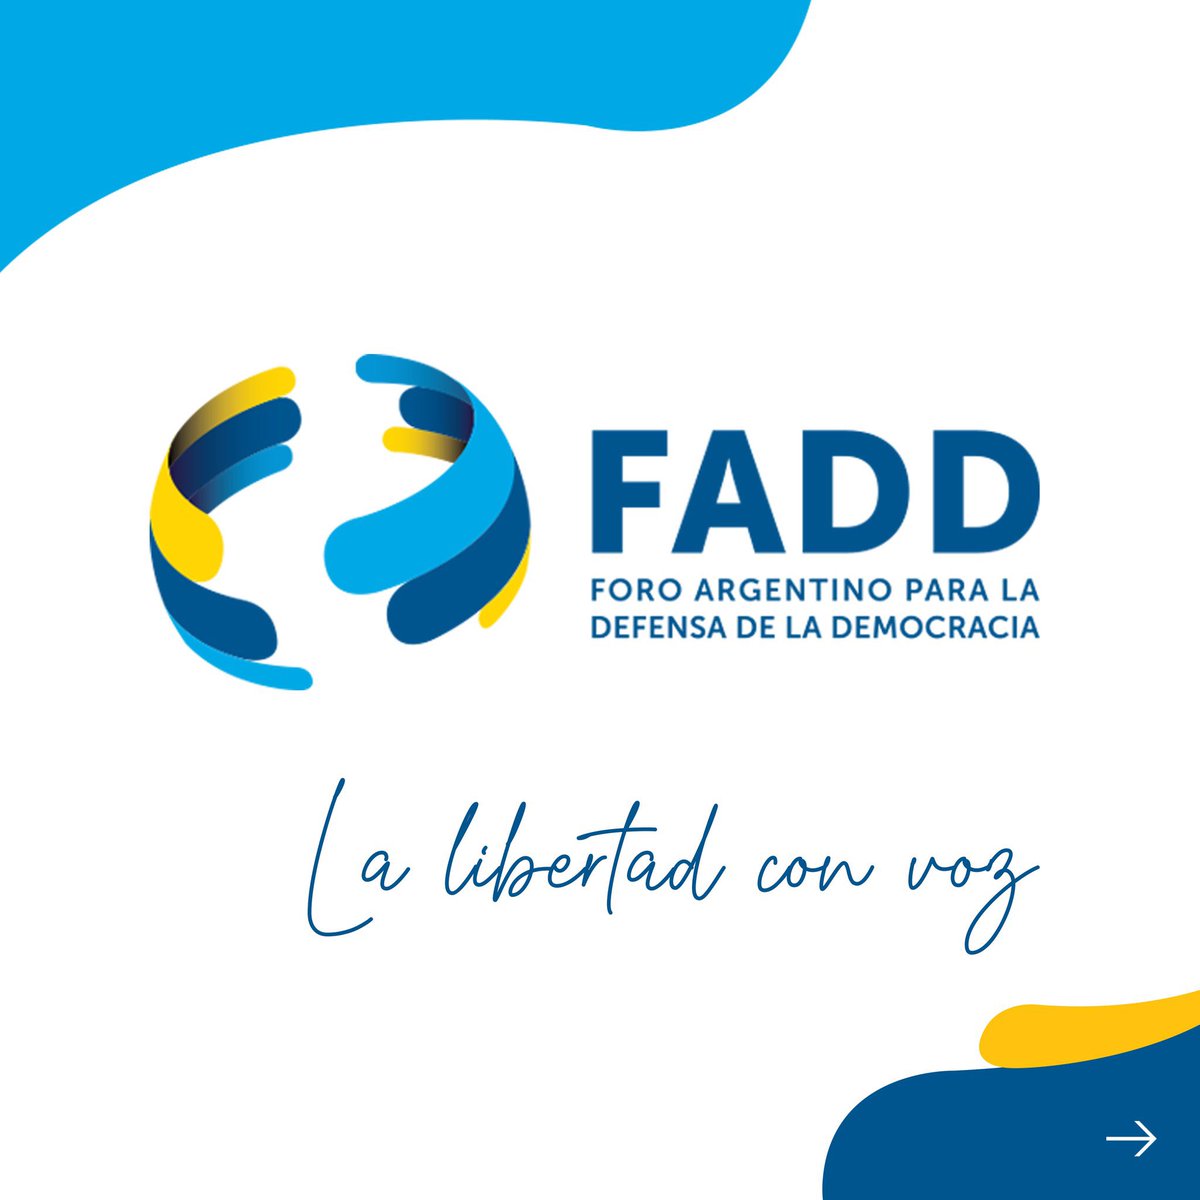 Celebro que hoy hayamos lanzado oficialmente el Foro Argentino por la Defensa de la Democracia (@FADDemocracia) Al foro lo fundamos en 2020 con el propósito de promover los valores democráticos y los derechos humanos. Nos comprometemos a ser defensores de la democracia, la